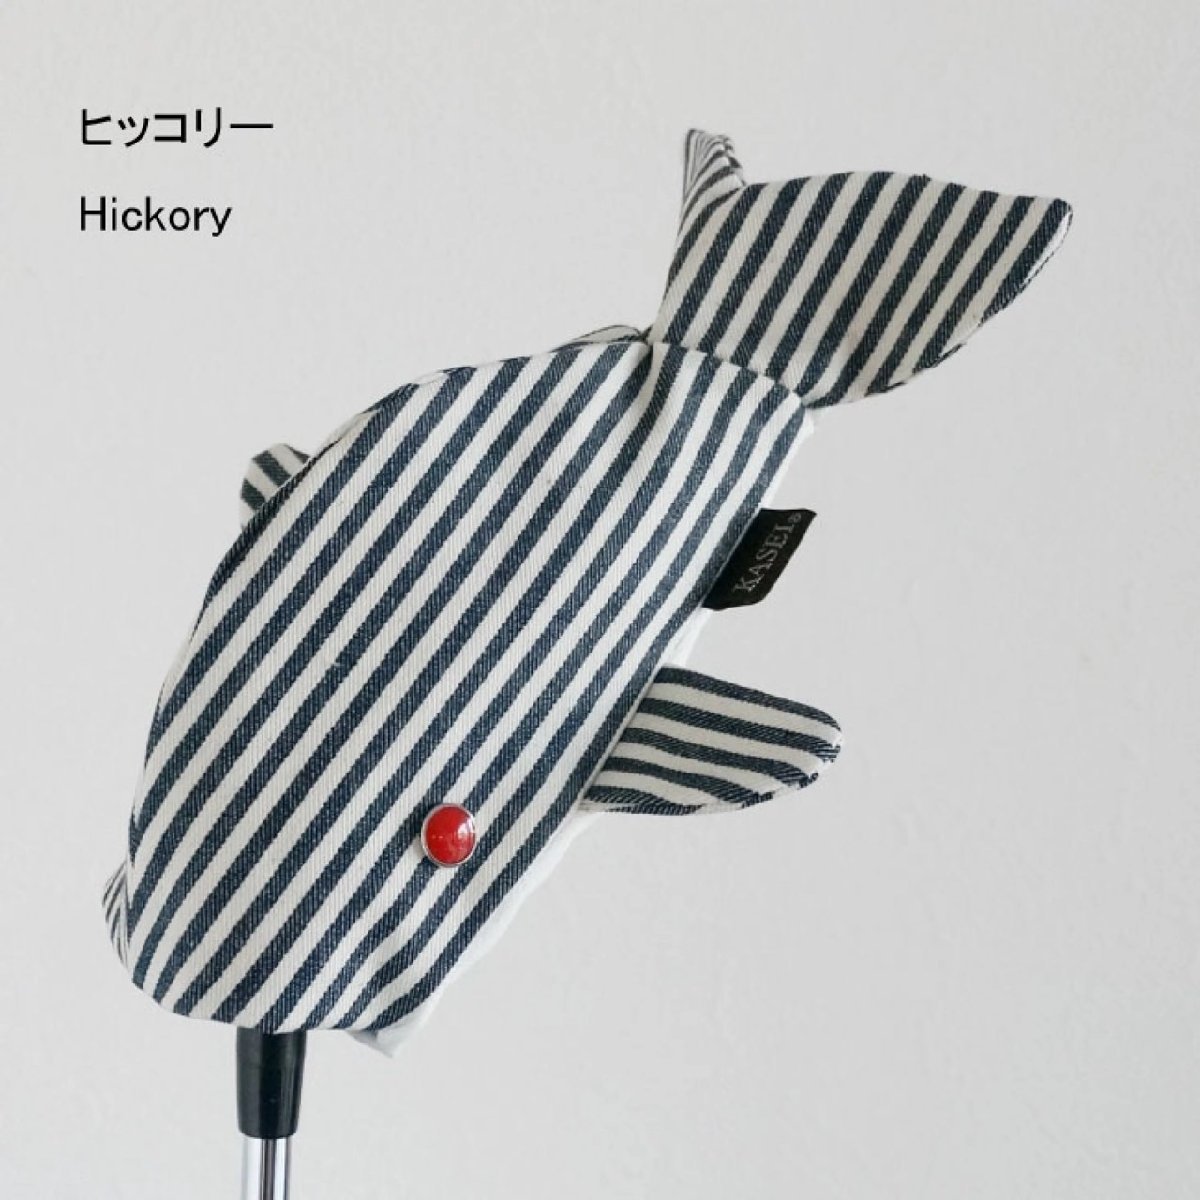 全国送料一律300円 木の庄帆布 展示品 がっこうクジラ UT用 ヒッコリー 訳有 YA-KHG19-HC12D-Hickory